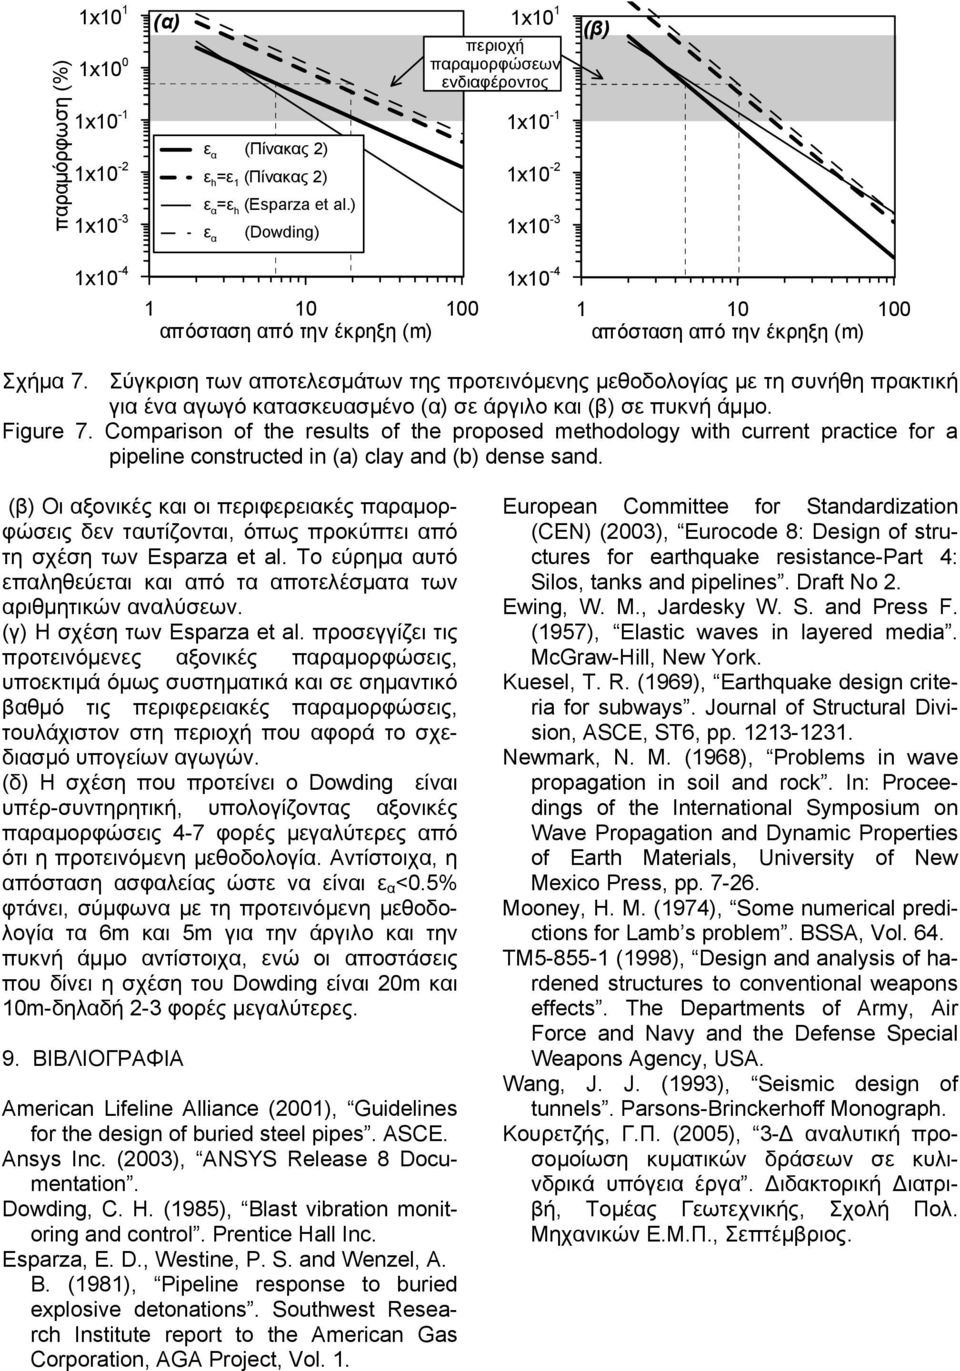 Σύγκριση των αποτλσµάτων της προτινόµνης µθοδολογίας µ τη συνήθη πρακτική για ένα αγωγό κατασκυασµένο (α) σ άργιλο και (β) σ πυκνή άµµο. Figure 7.